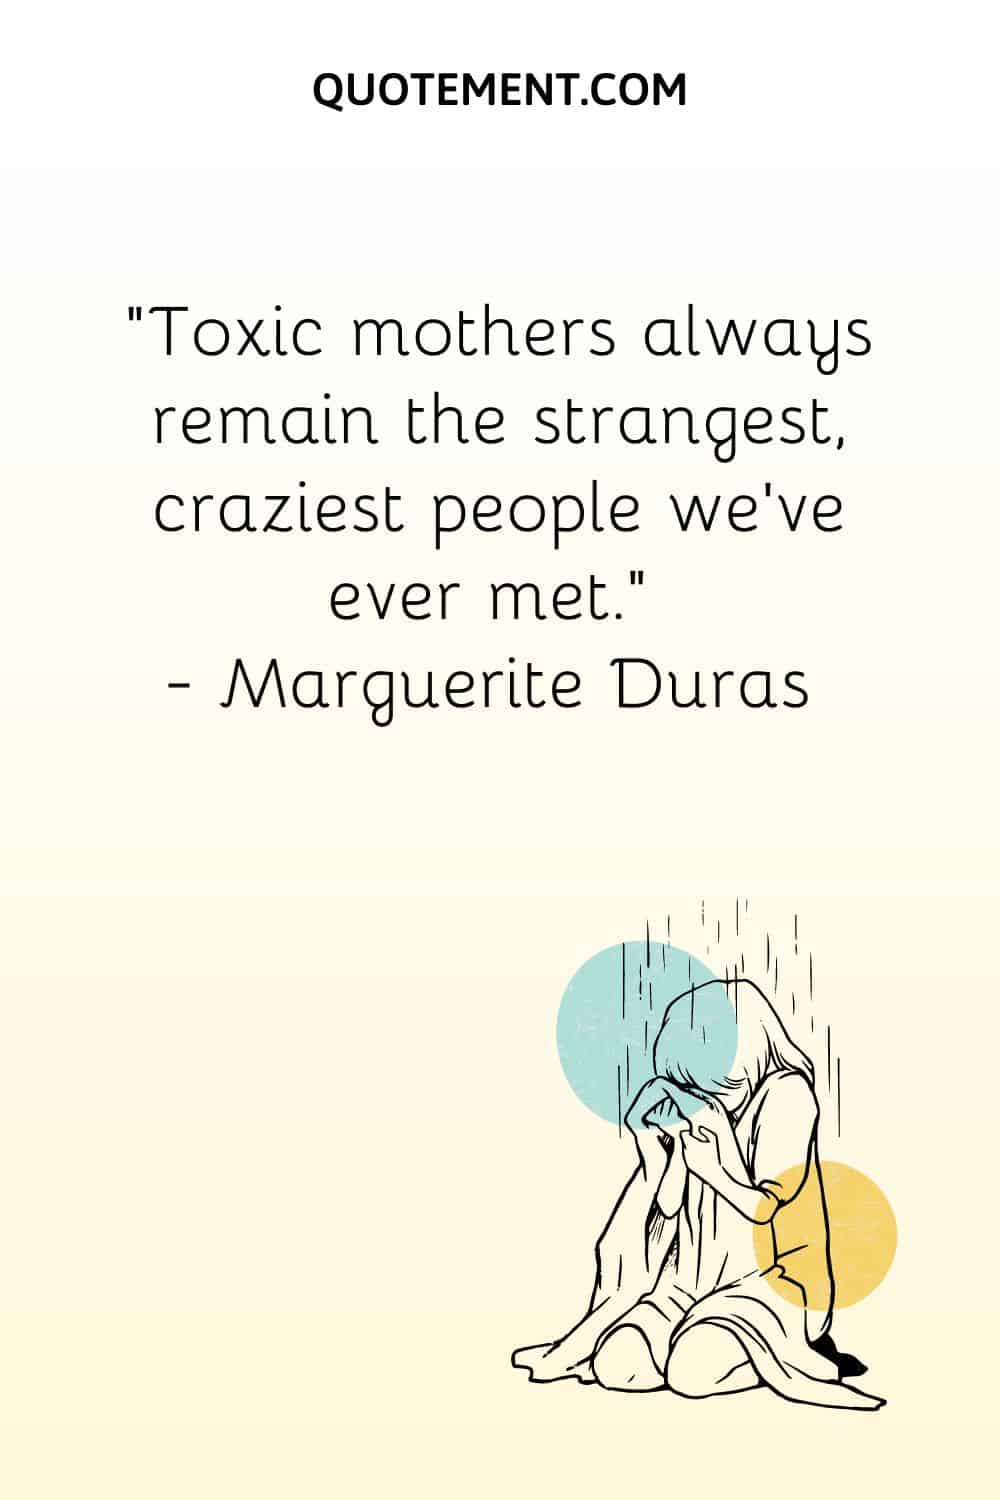 Toxic mothers always remain the strangest, craziest people we’ve ever met